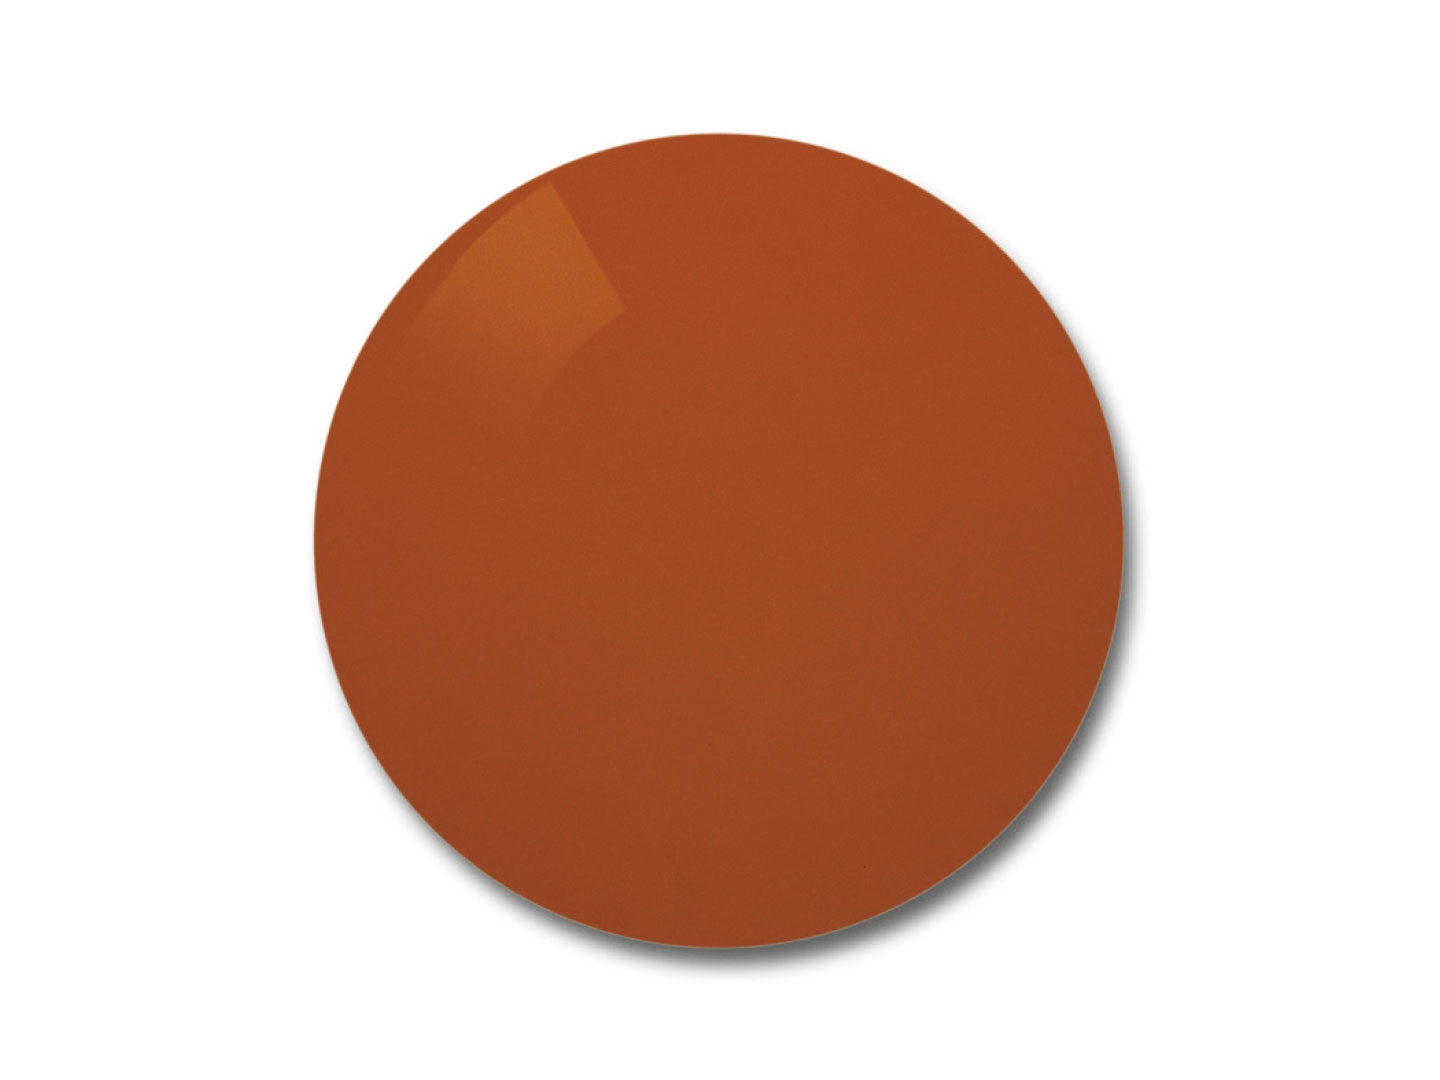 Obraz soczewki ZEISS Skylet® Fun z pomarańczowo-brązowym odcieniem